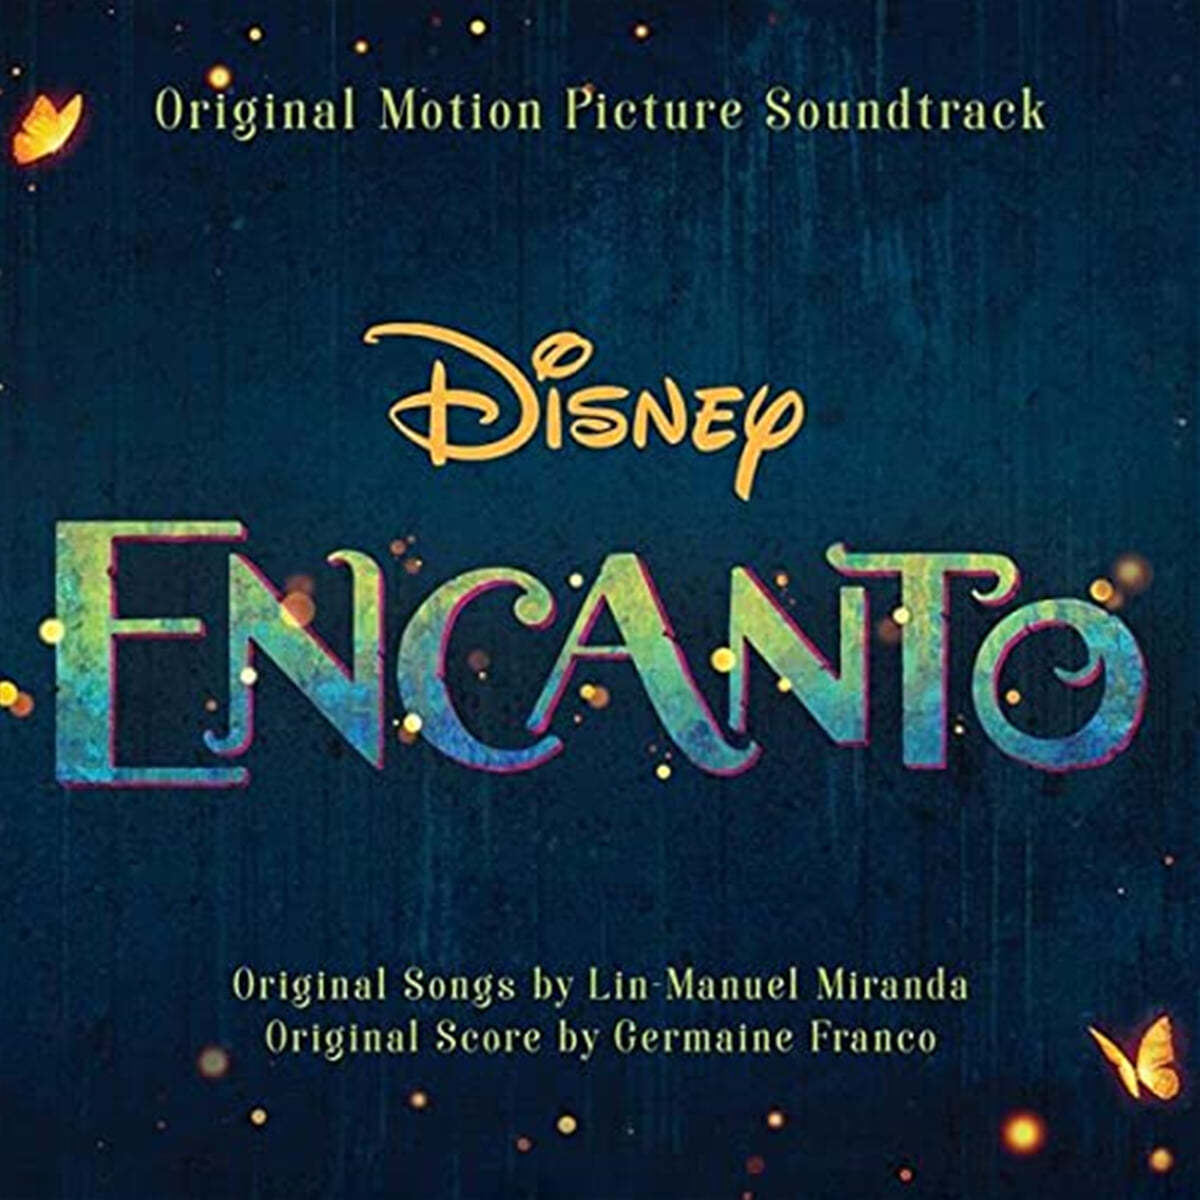 디즈니 '엔칸토: 마법의 세계' 영화음악 (Encanto OST by Lin-Manuel Miranda) [Deluxe] 